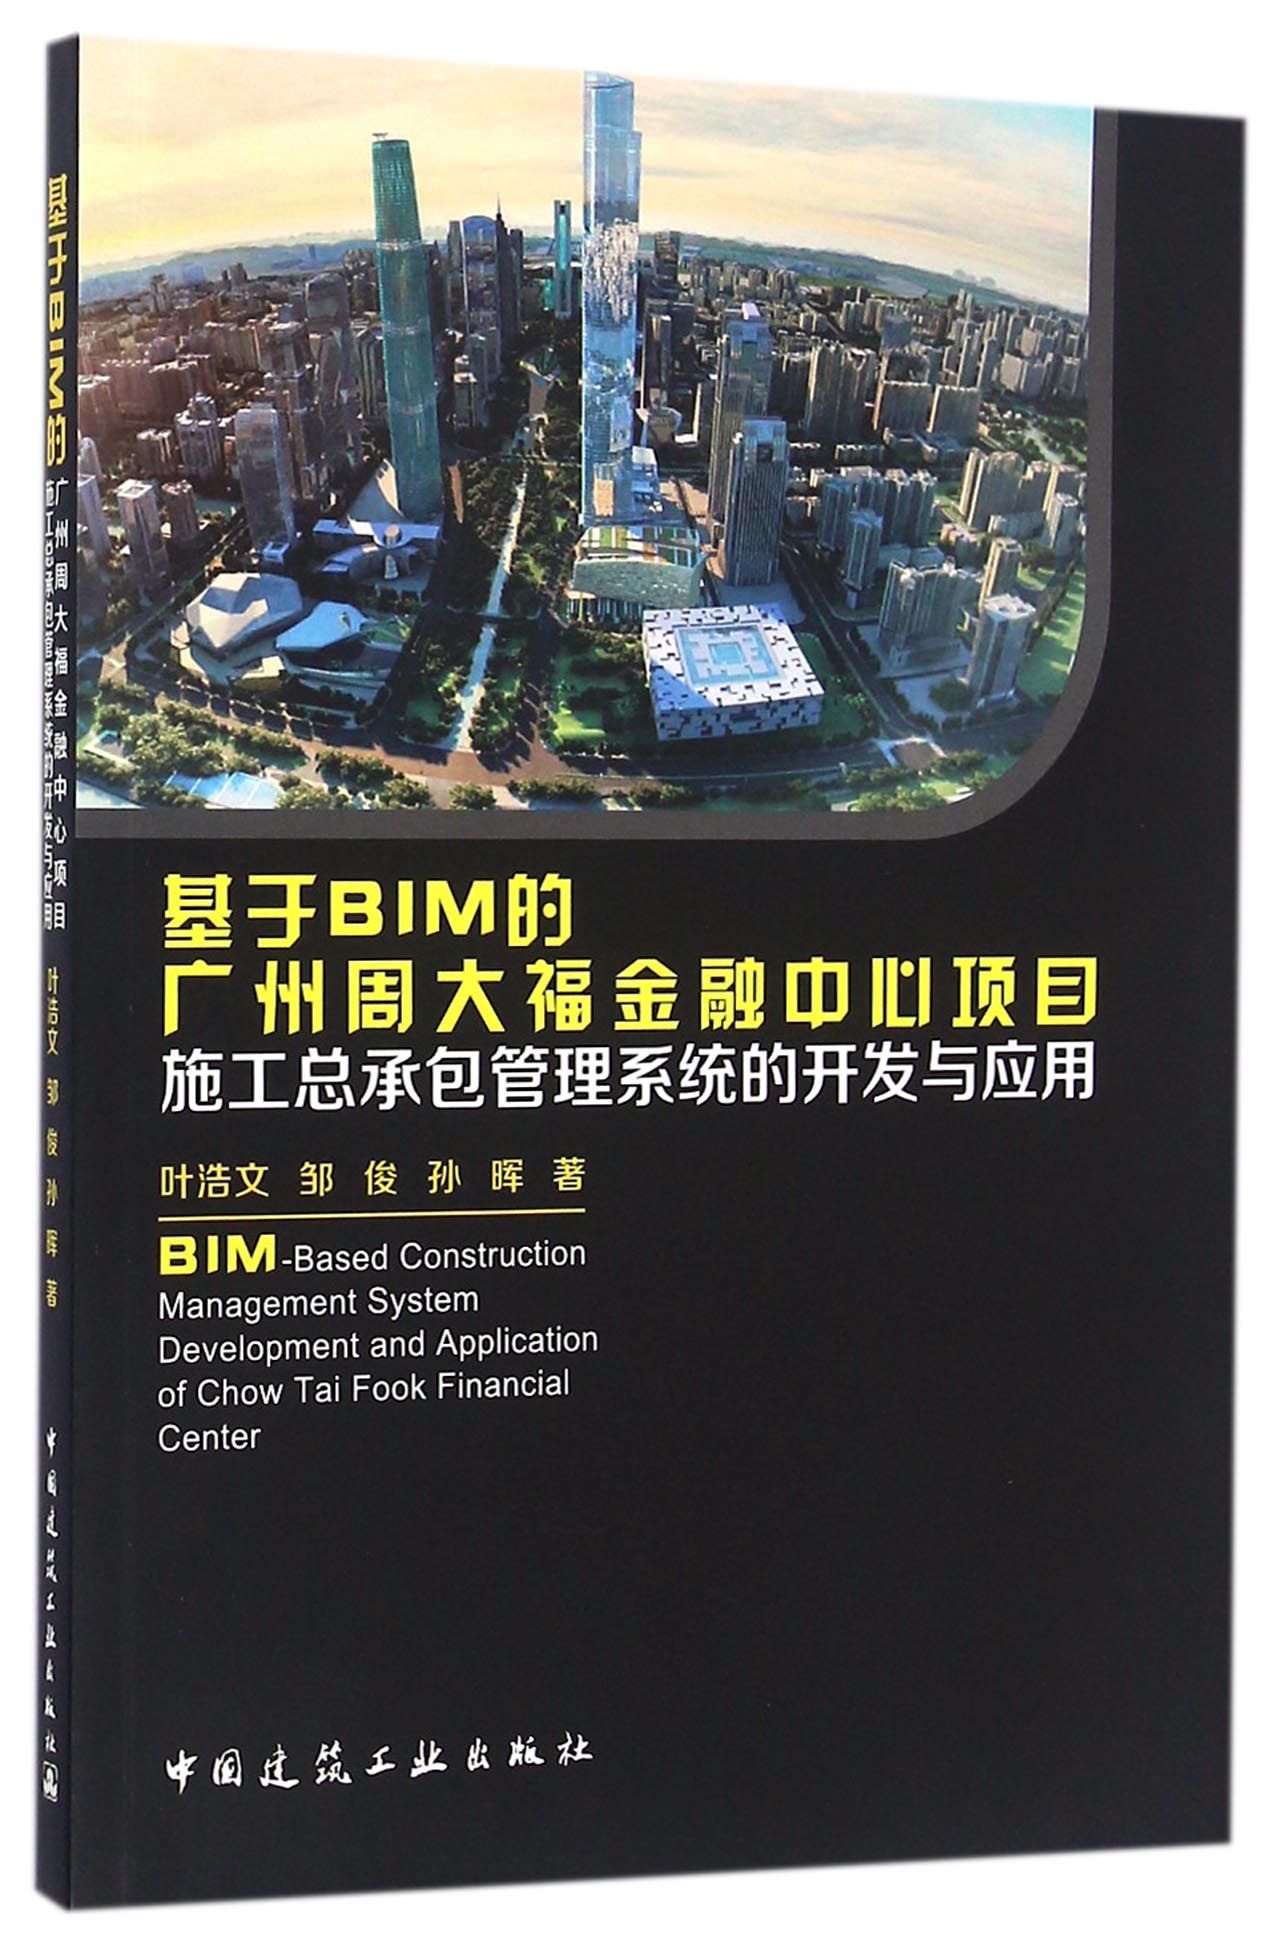 基于BIM的广州周大福金融中心项目施工总承包管理系统的开发与应用